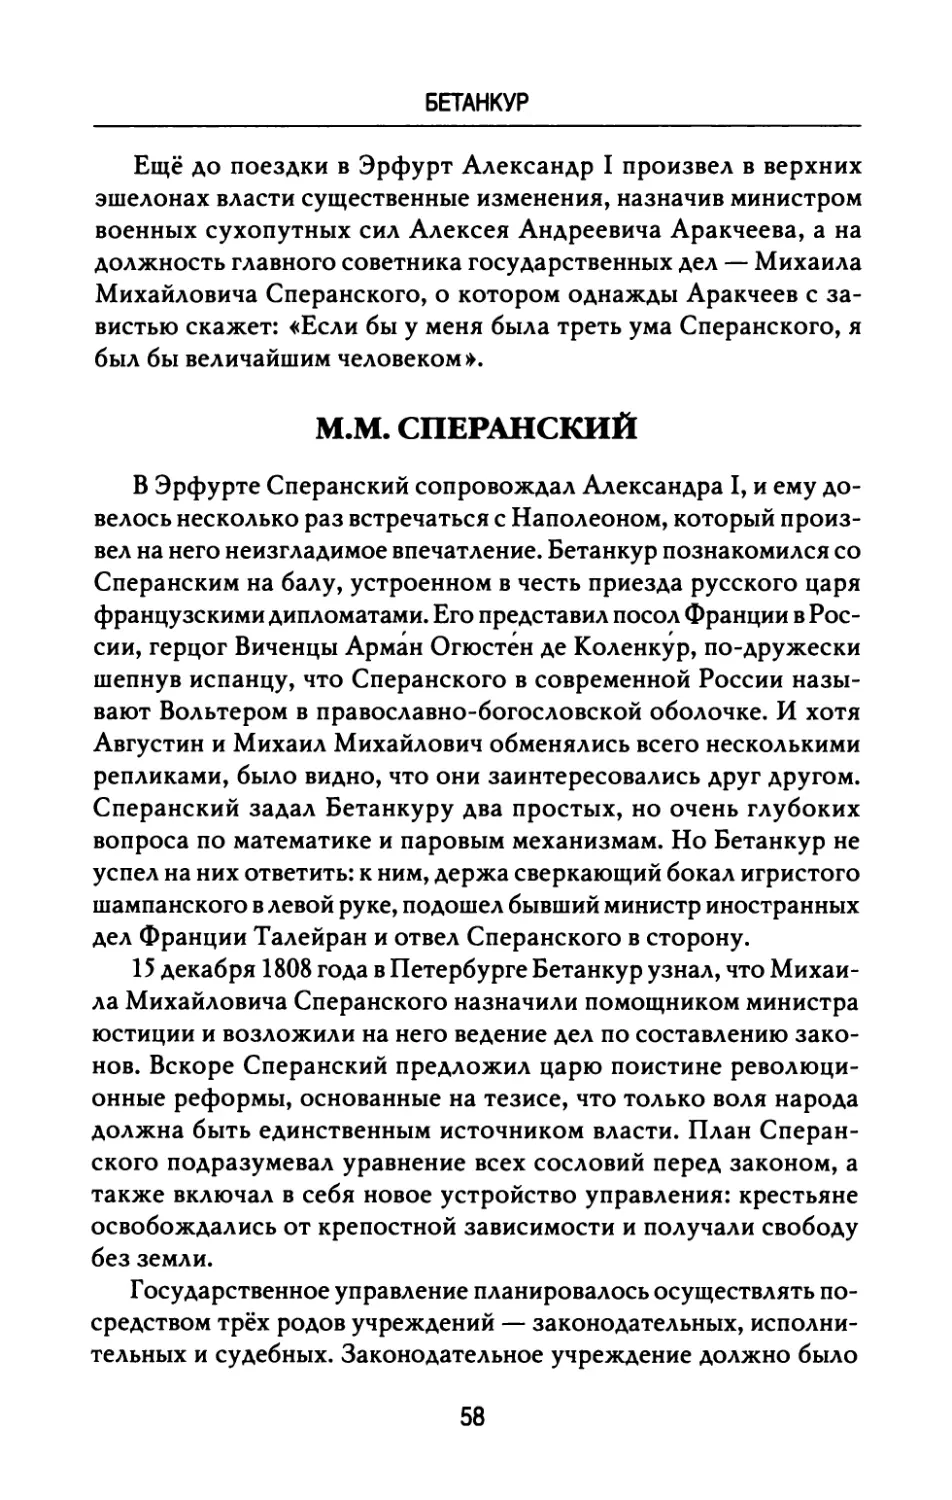 М.М.  Сперанский